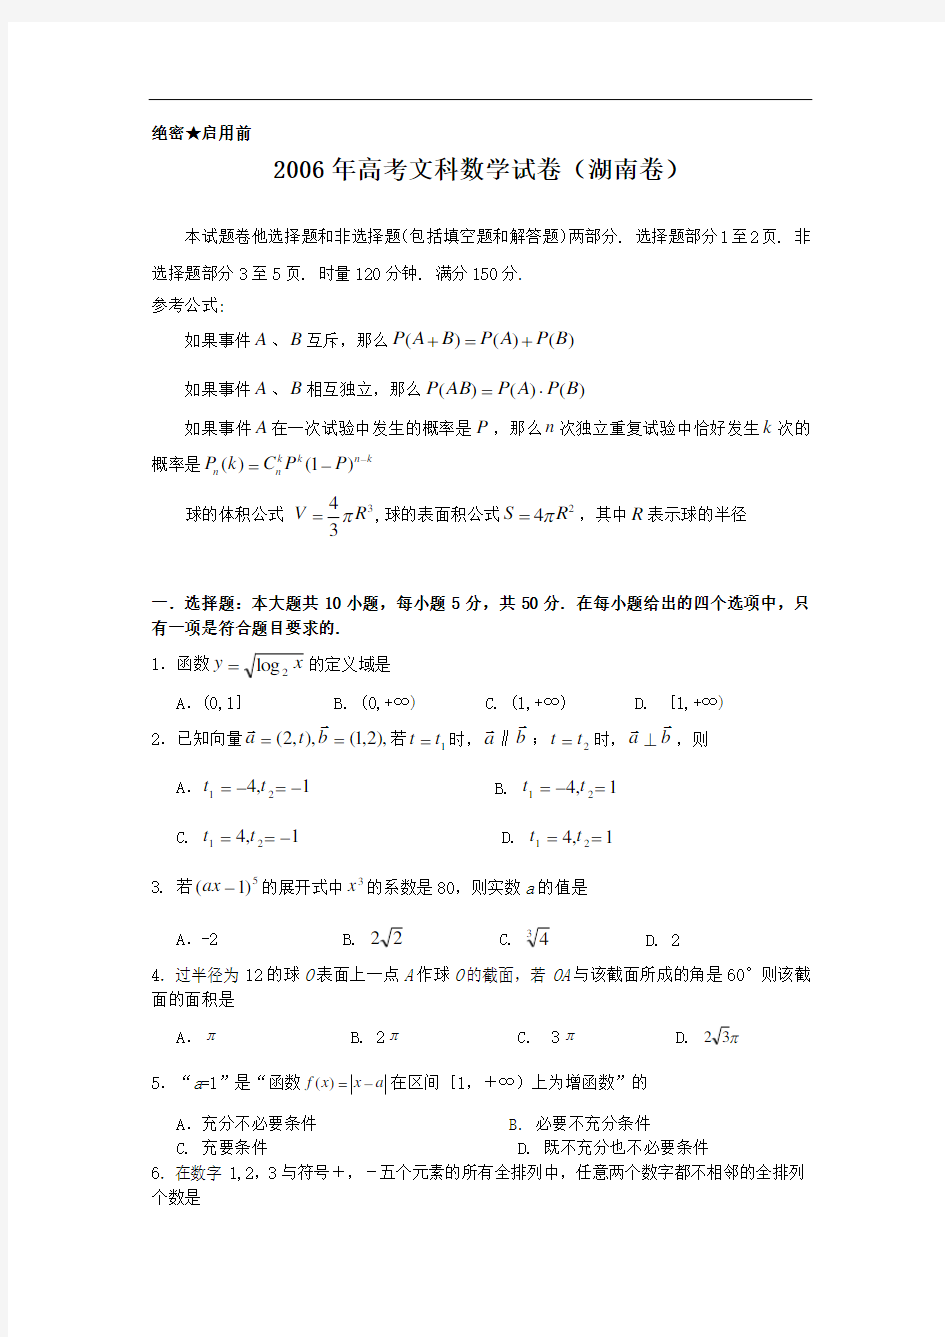 2006年高考文科数学试题及答案(湖南卷)